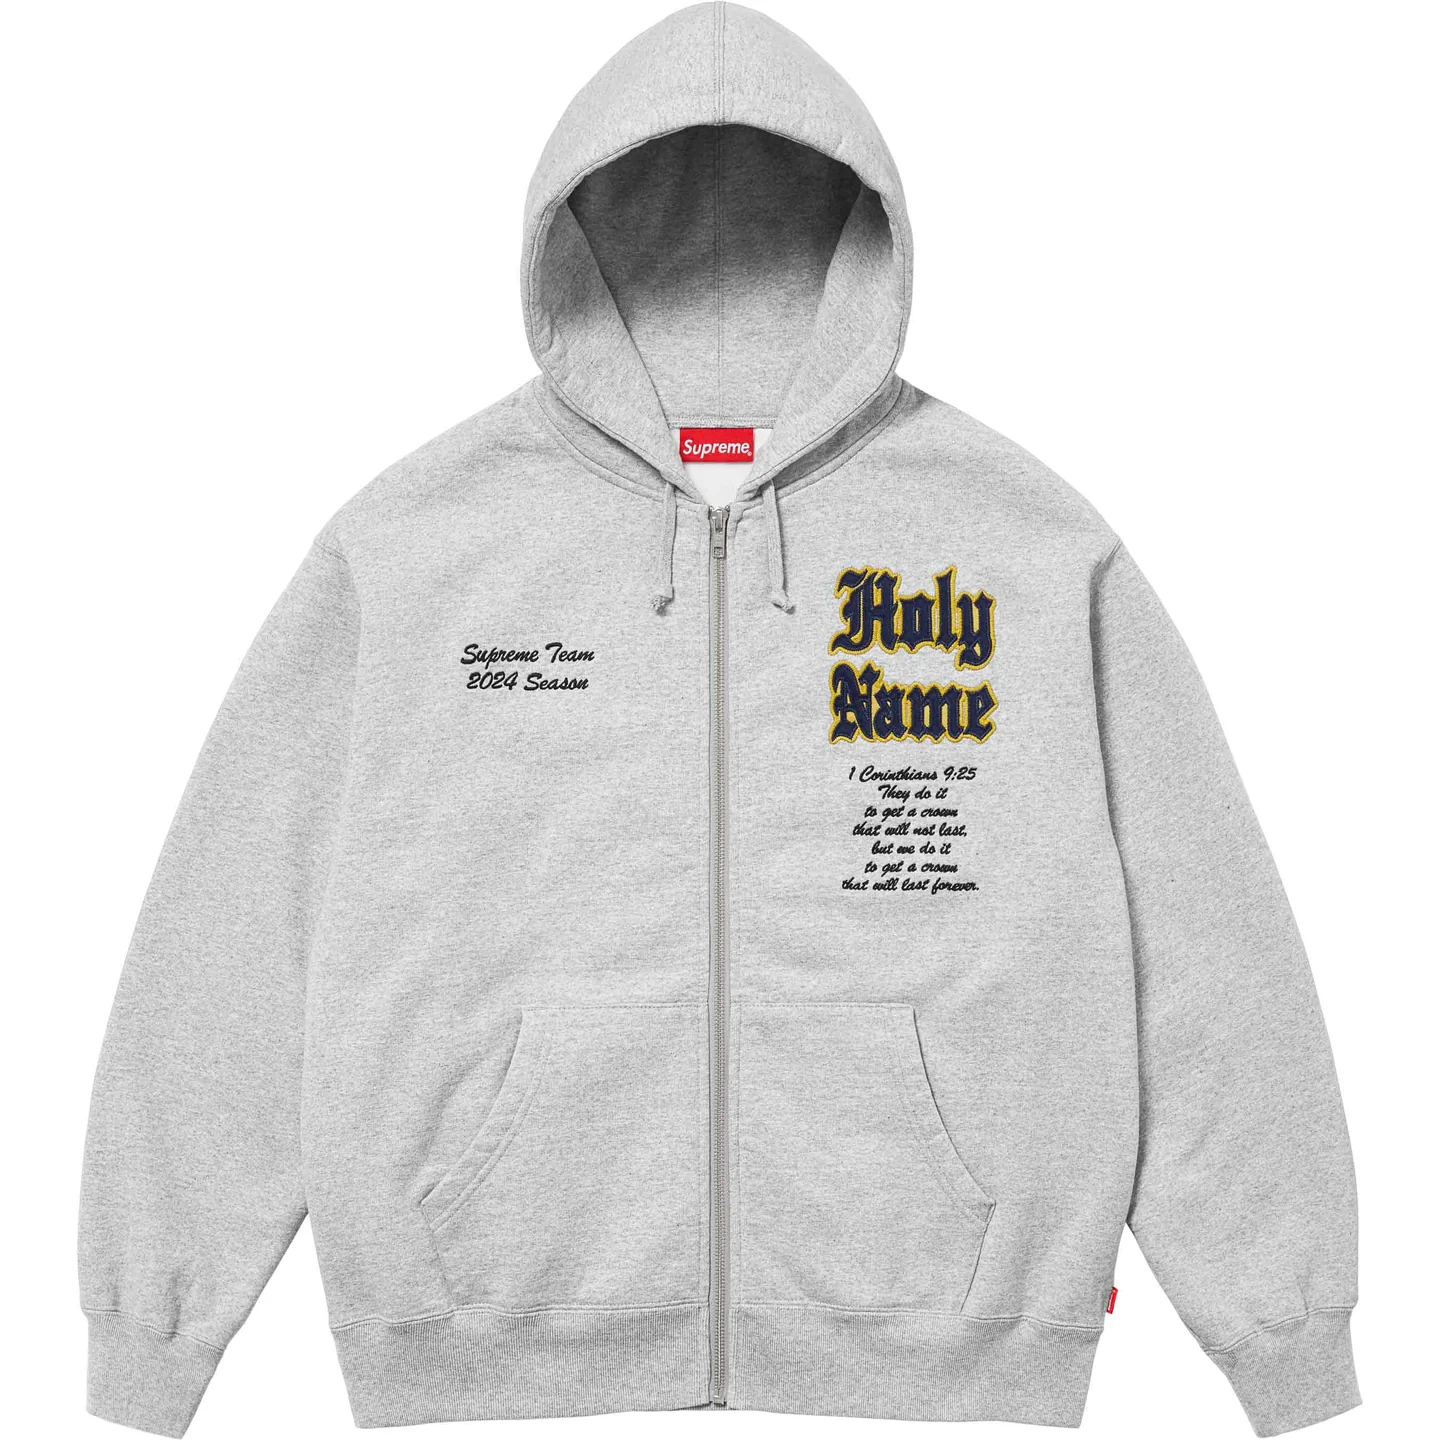 Supreme Salvation Zip Up Hooded Sweatshirt